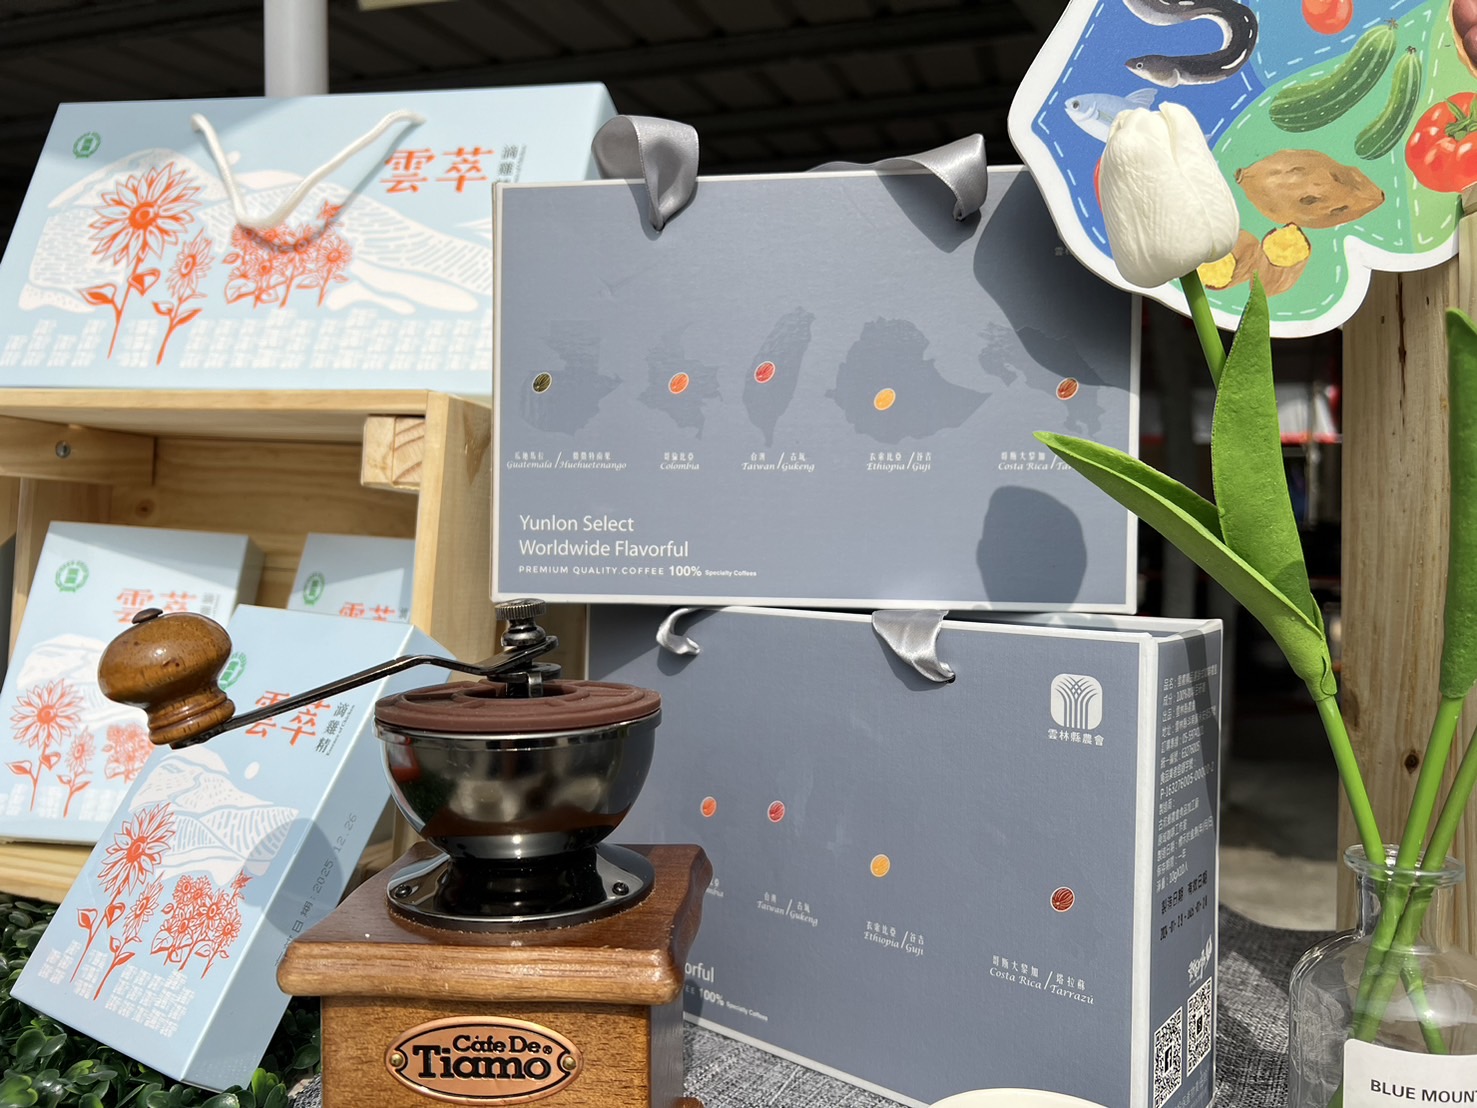 云林县农会推出滴鸡精、精品咖啡礼盒，让消费市场惊艳。记者陈雅玲／摄影